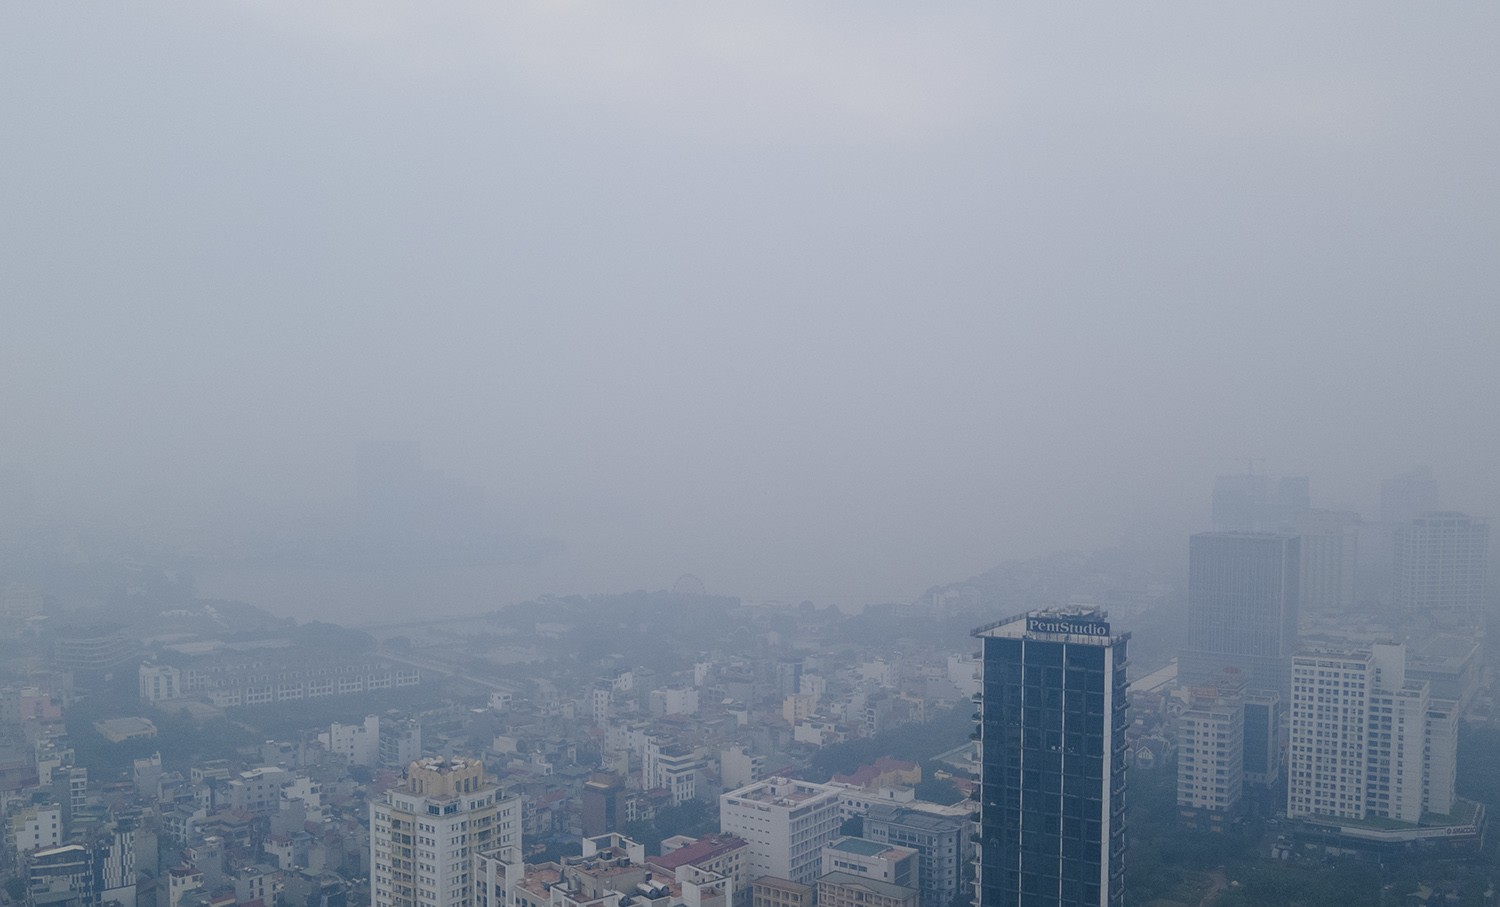 Trung tâm Hà Nội chìm trong sương mù dày đặc, chất lượng không khí nhiều nơi ở “mức đỏ” - 13